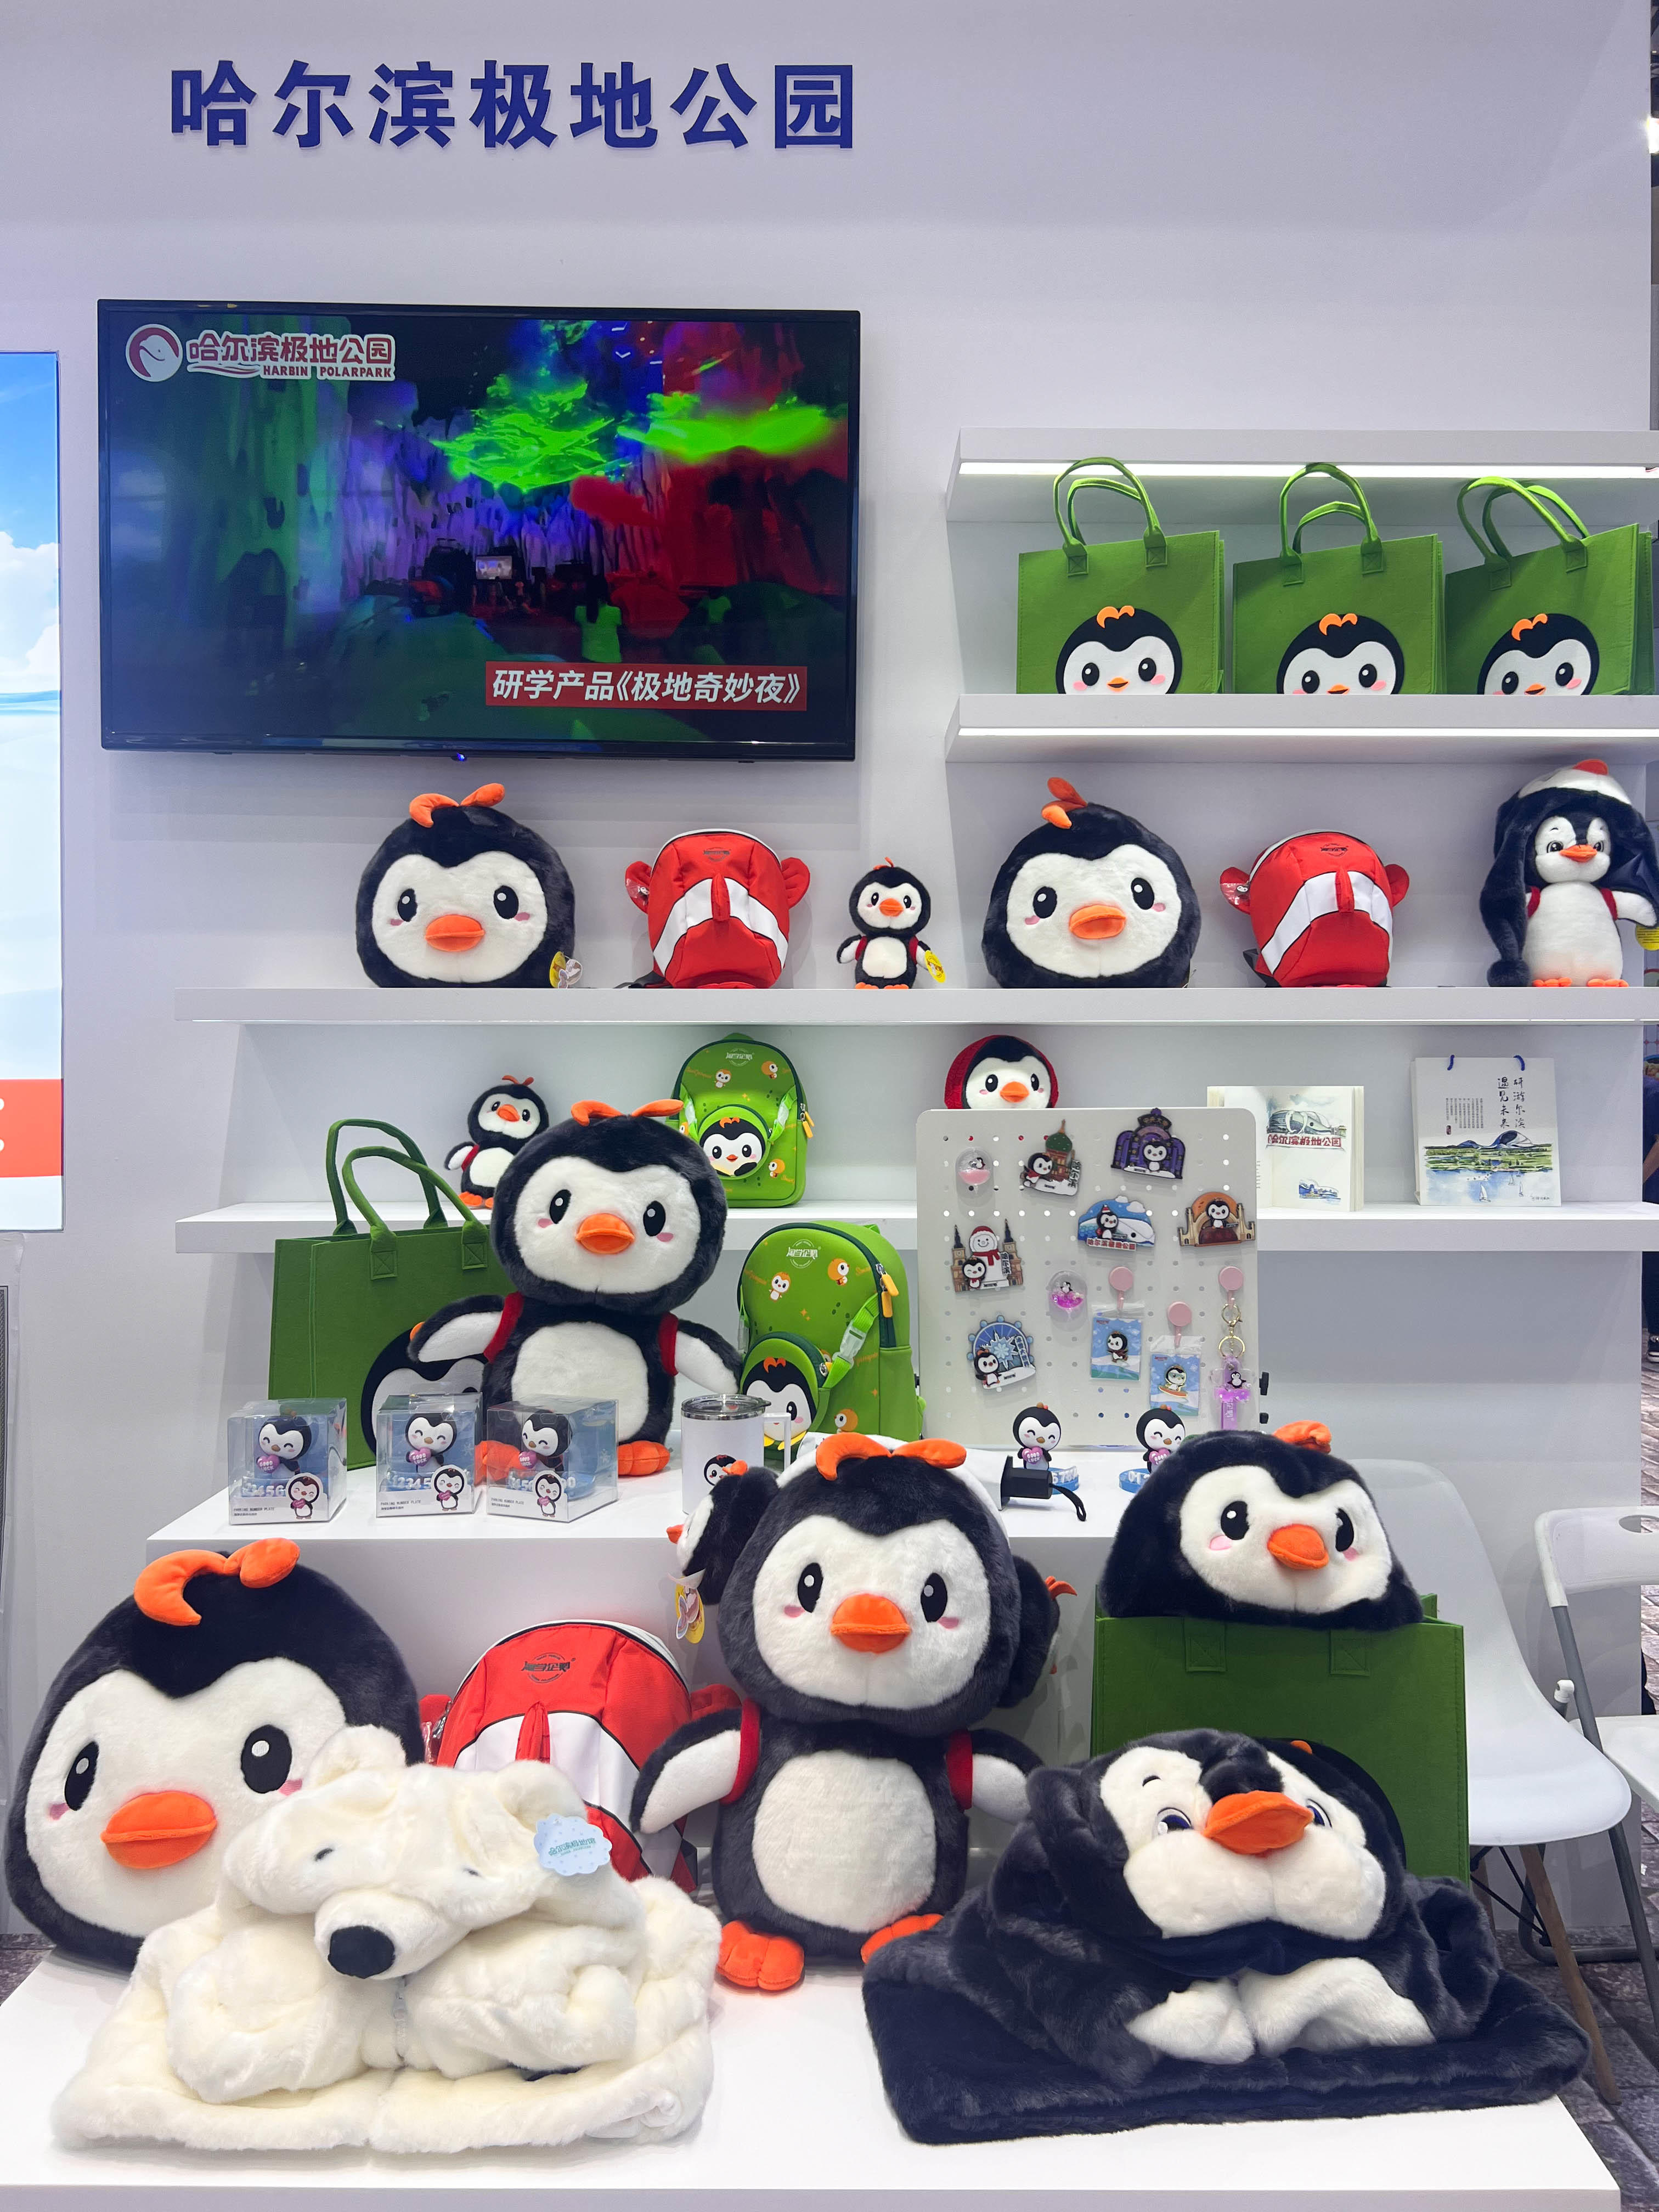 目前,淘学企鹅的文创产品已经有毛绒玩具类,背包类,益智玩具类,保暖